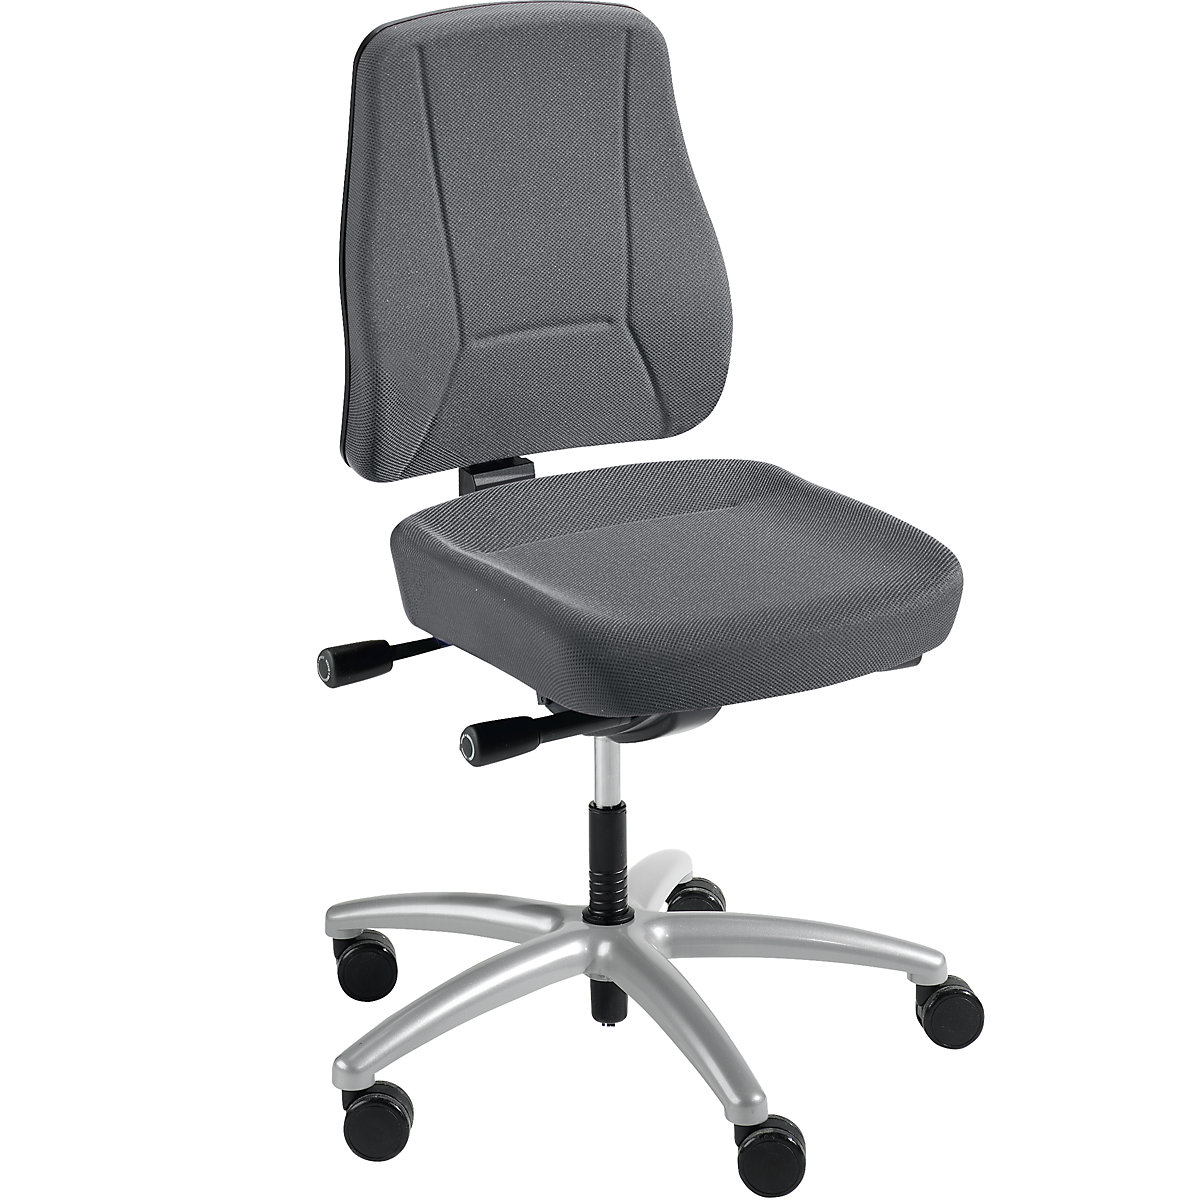 Kancelárska otočná stolička YOUNICO PRO – Prosedia, výška operadla 540 mm, šedá-2